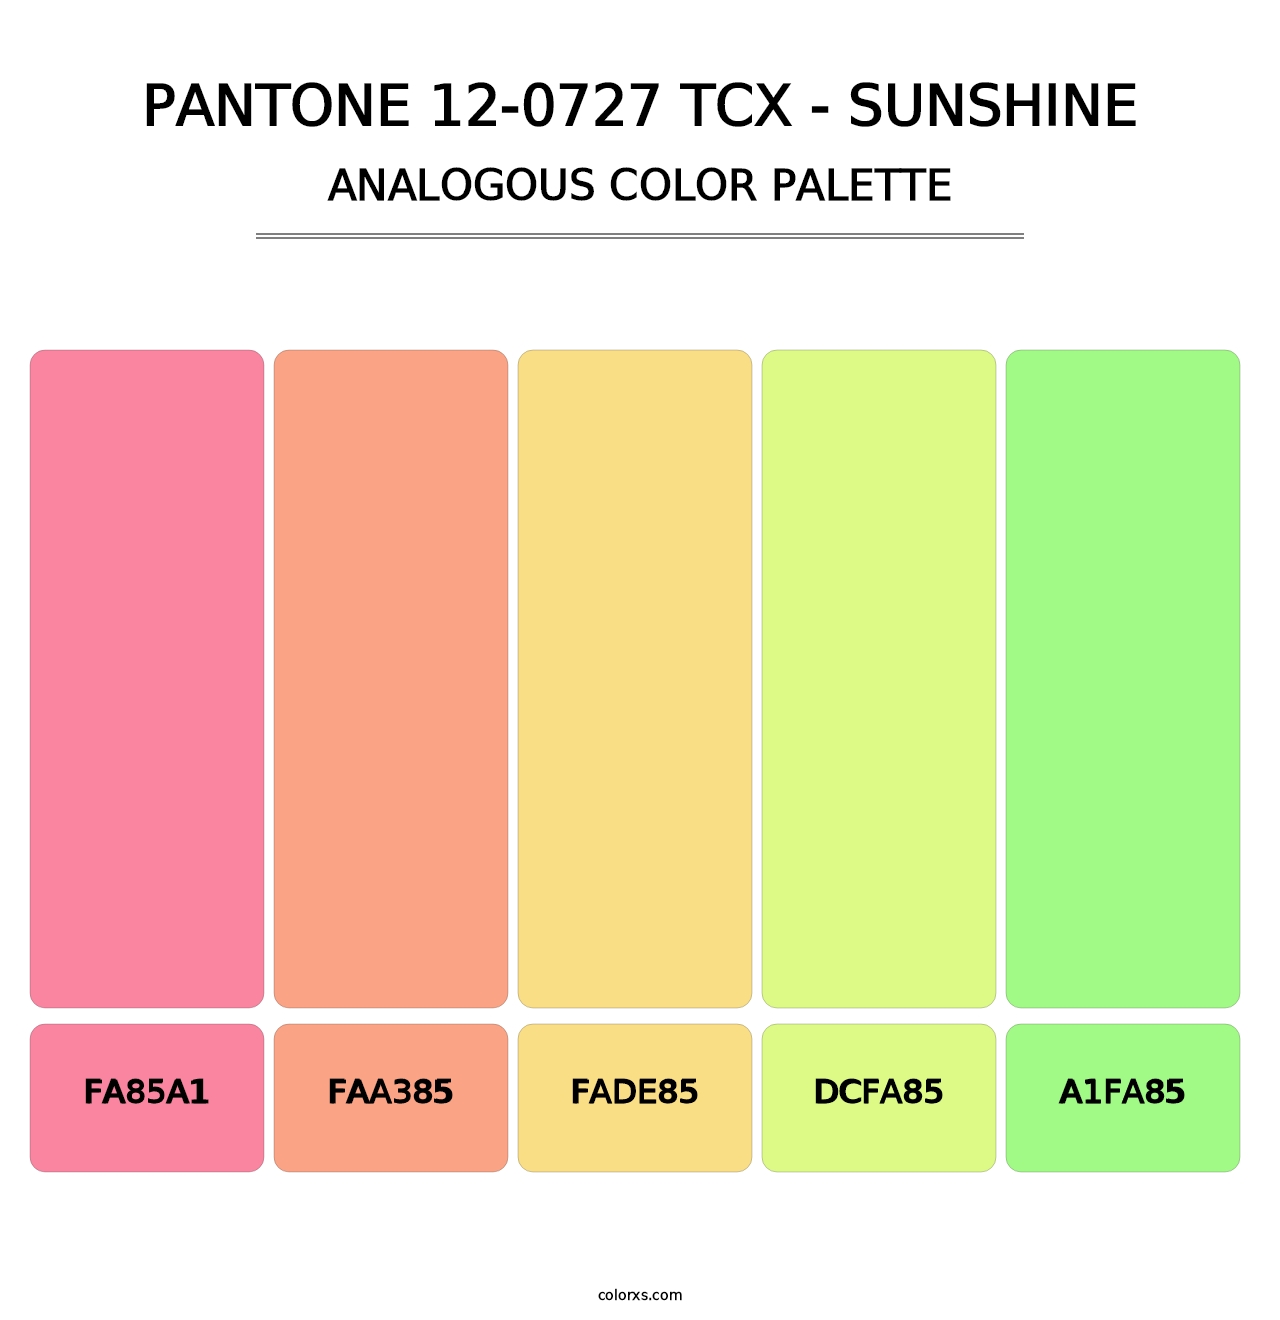 PANTONE 12-0727 TCX - Sunshine - Analogous Color Palette